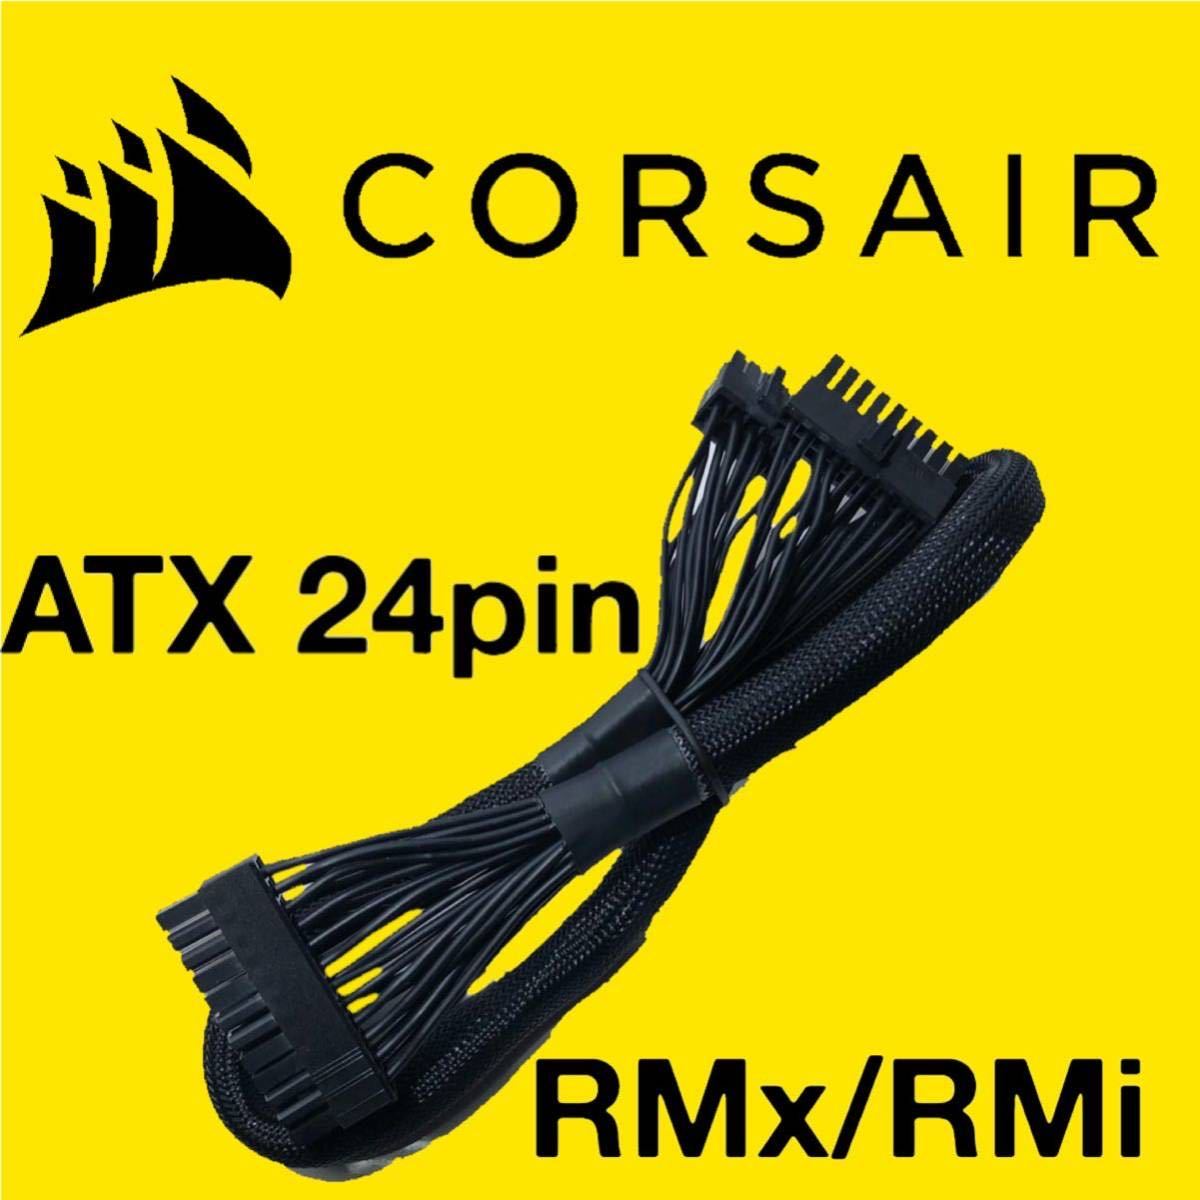 【正規品】未使用 CORSAIR コルセア ATX24ピン RMx/RMi PSU 電源モジュラーケーブル 純正品 プラグイン マザーボード電源 